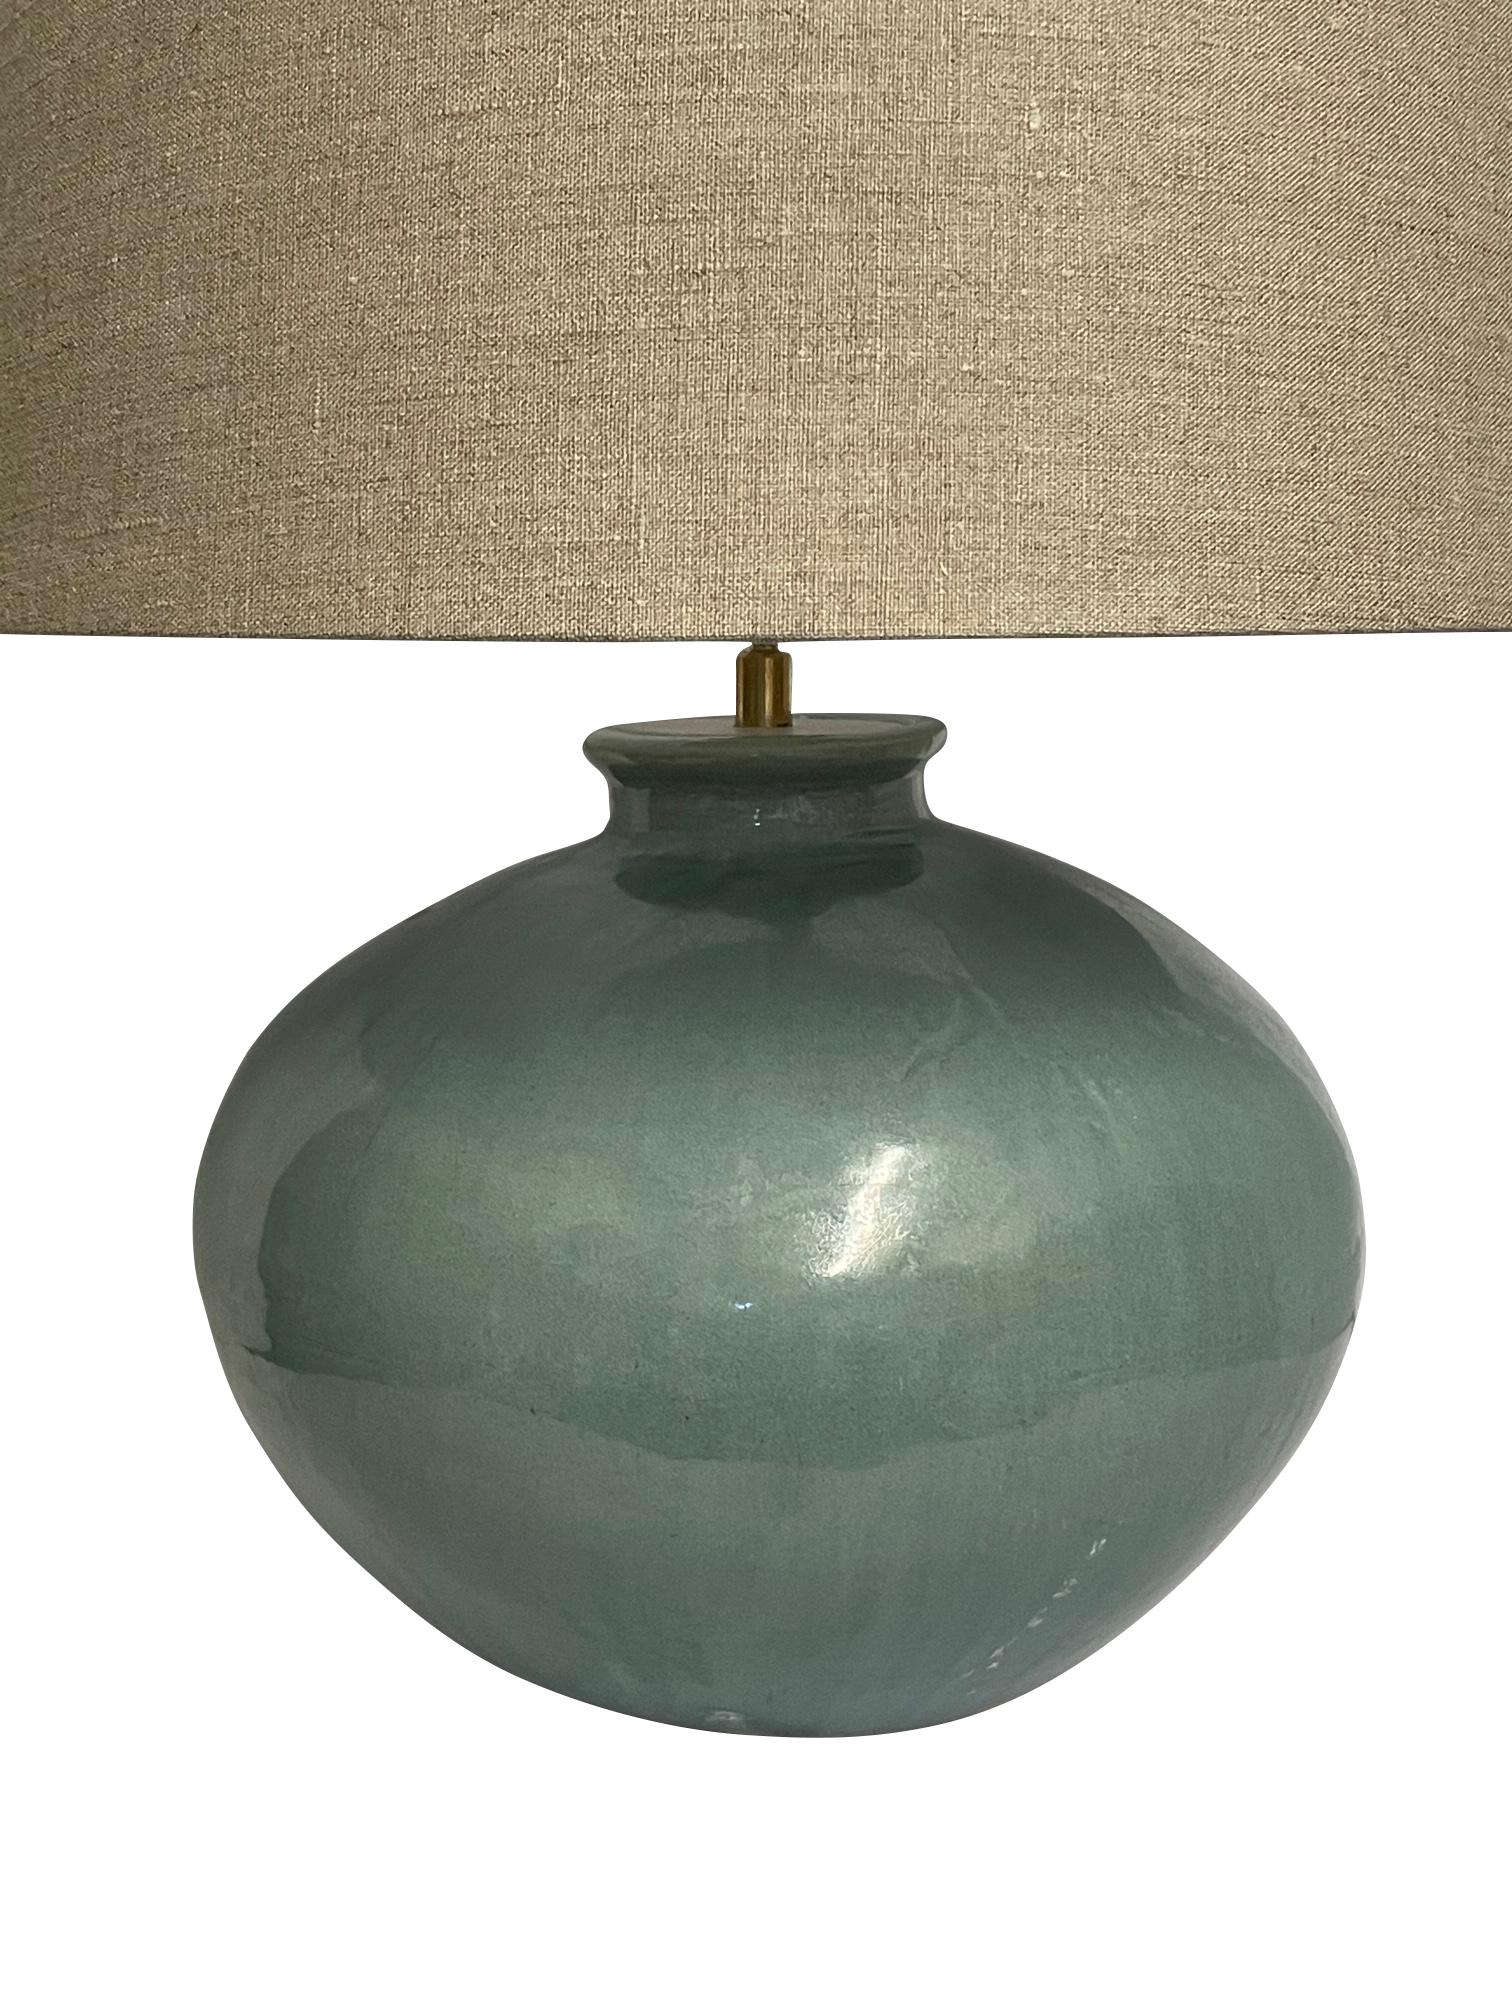 Paire de lampes contemporaines chinoises de couleur turquoise.
Base complète de forme arrondie
La base mesure 14D x 11H.
Hauteur totale 23